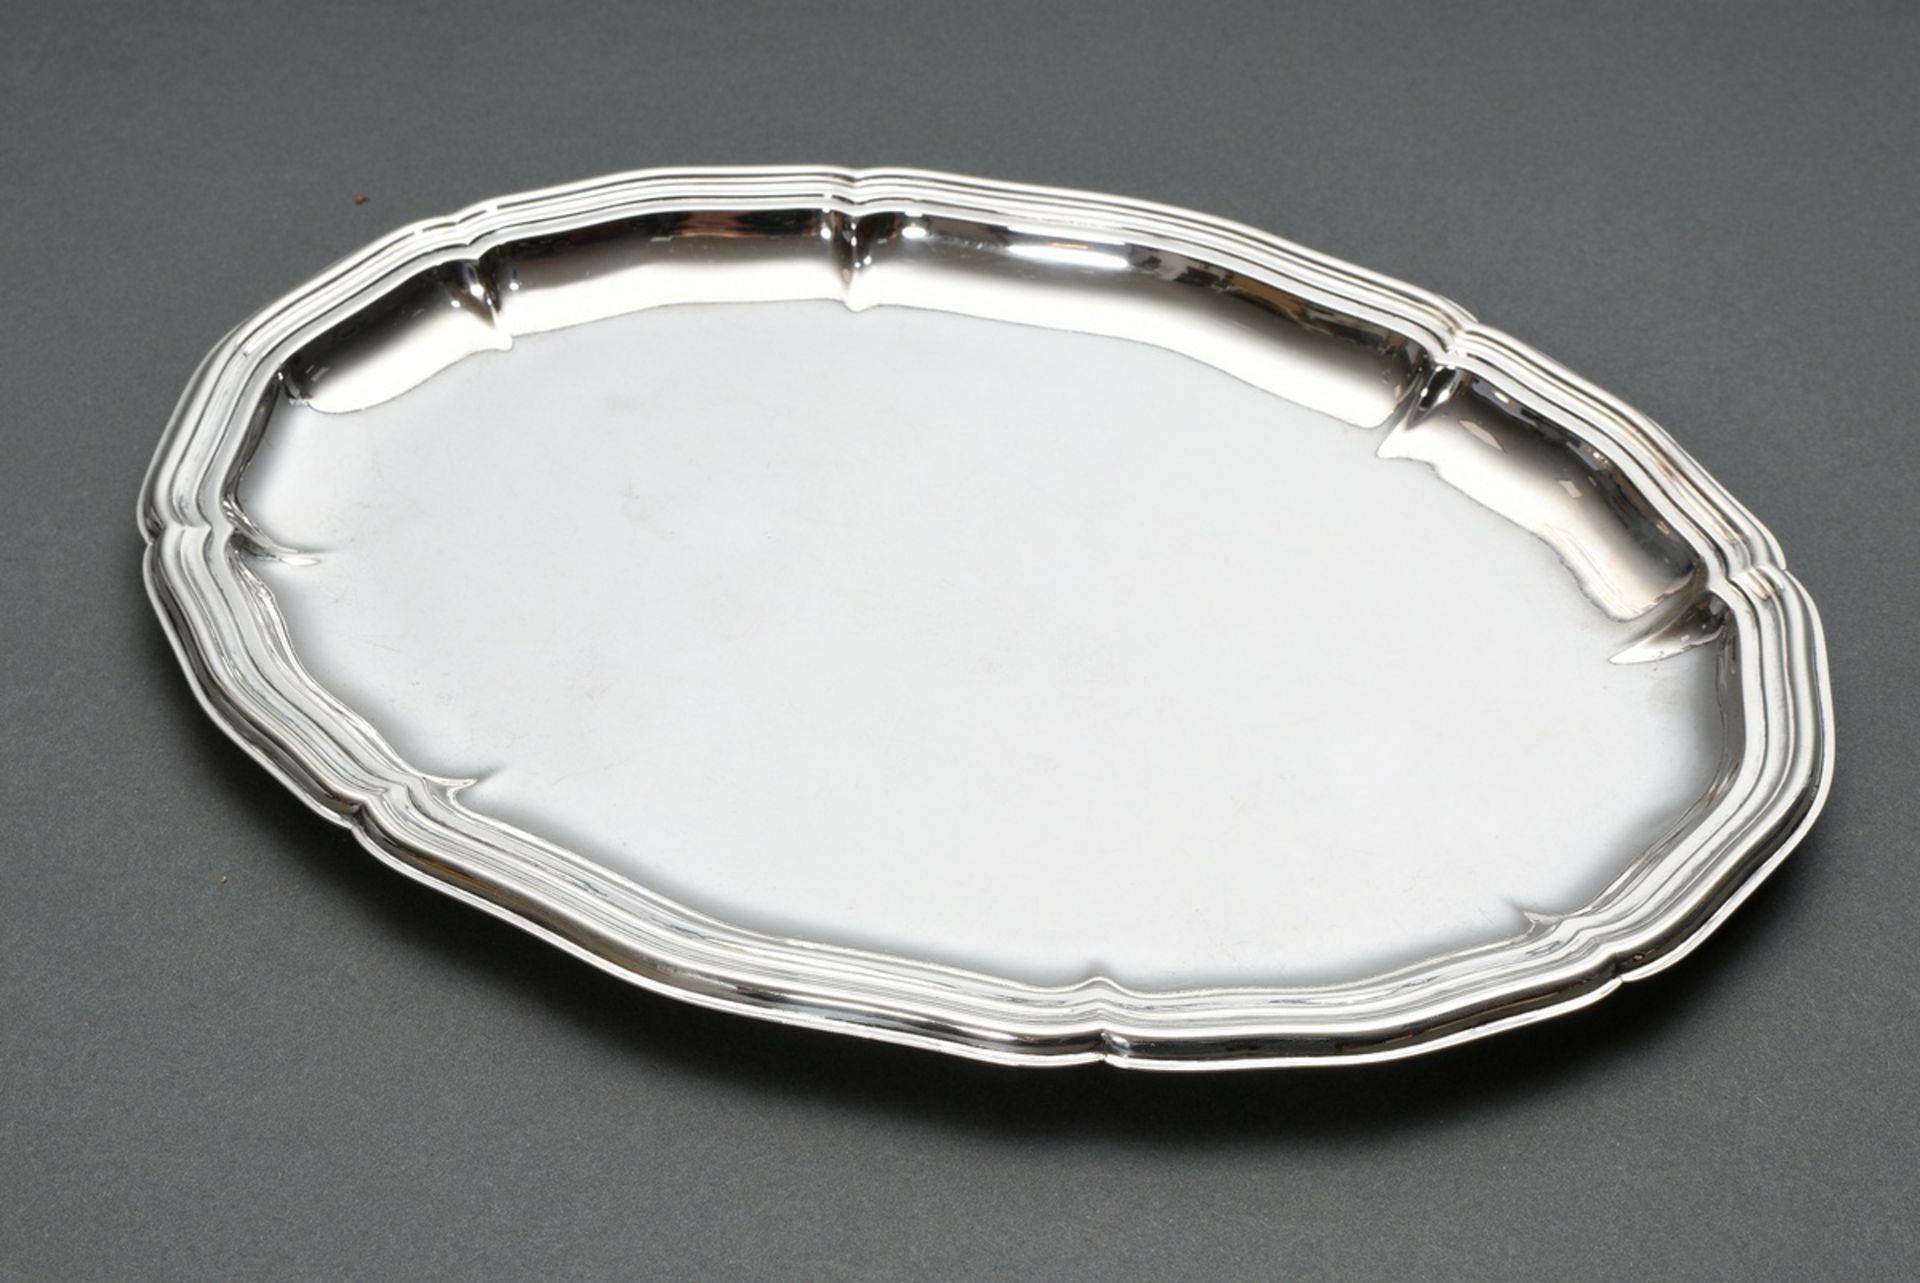 Ovales Tablett mit Chippendale Rand, Silber 835, 202g, 25x18,5cm, Gebrauchspuren